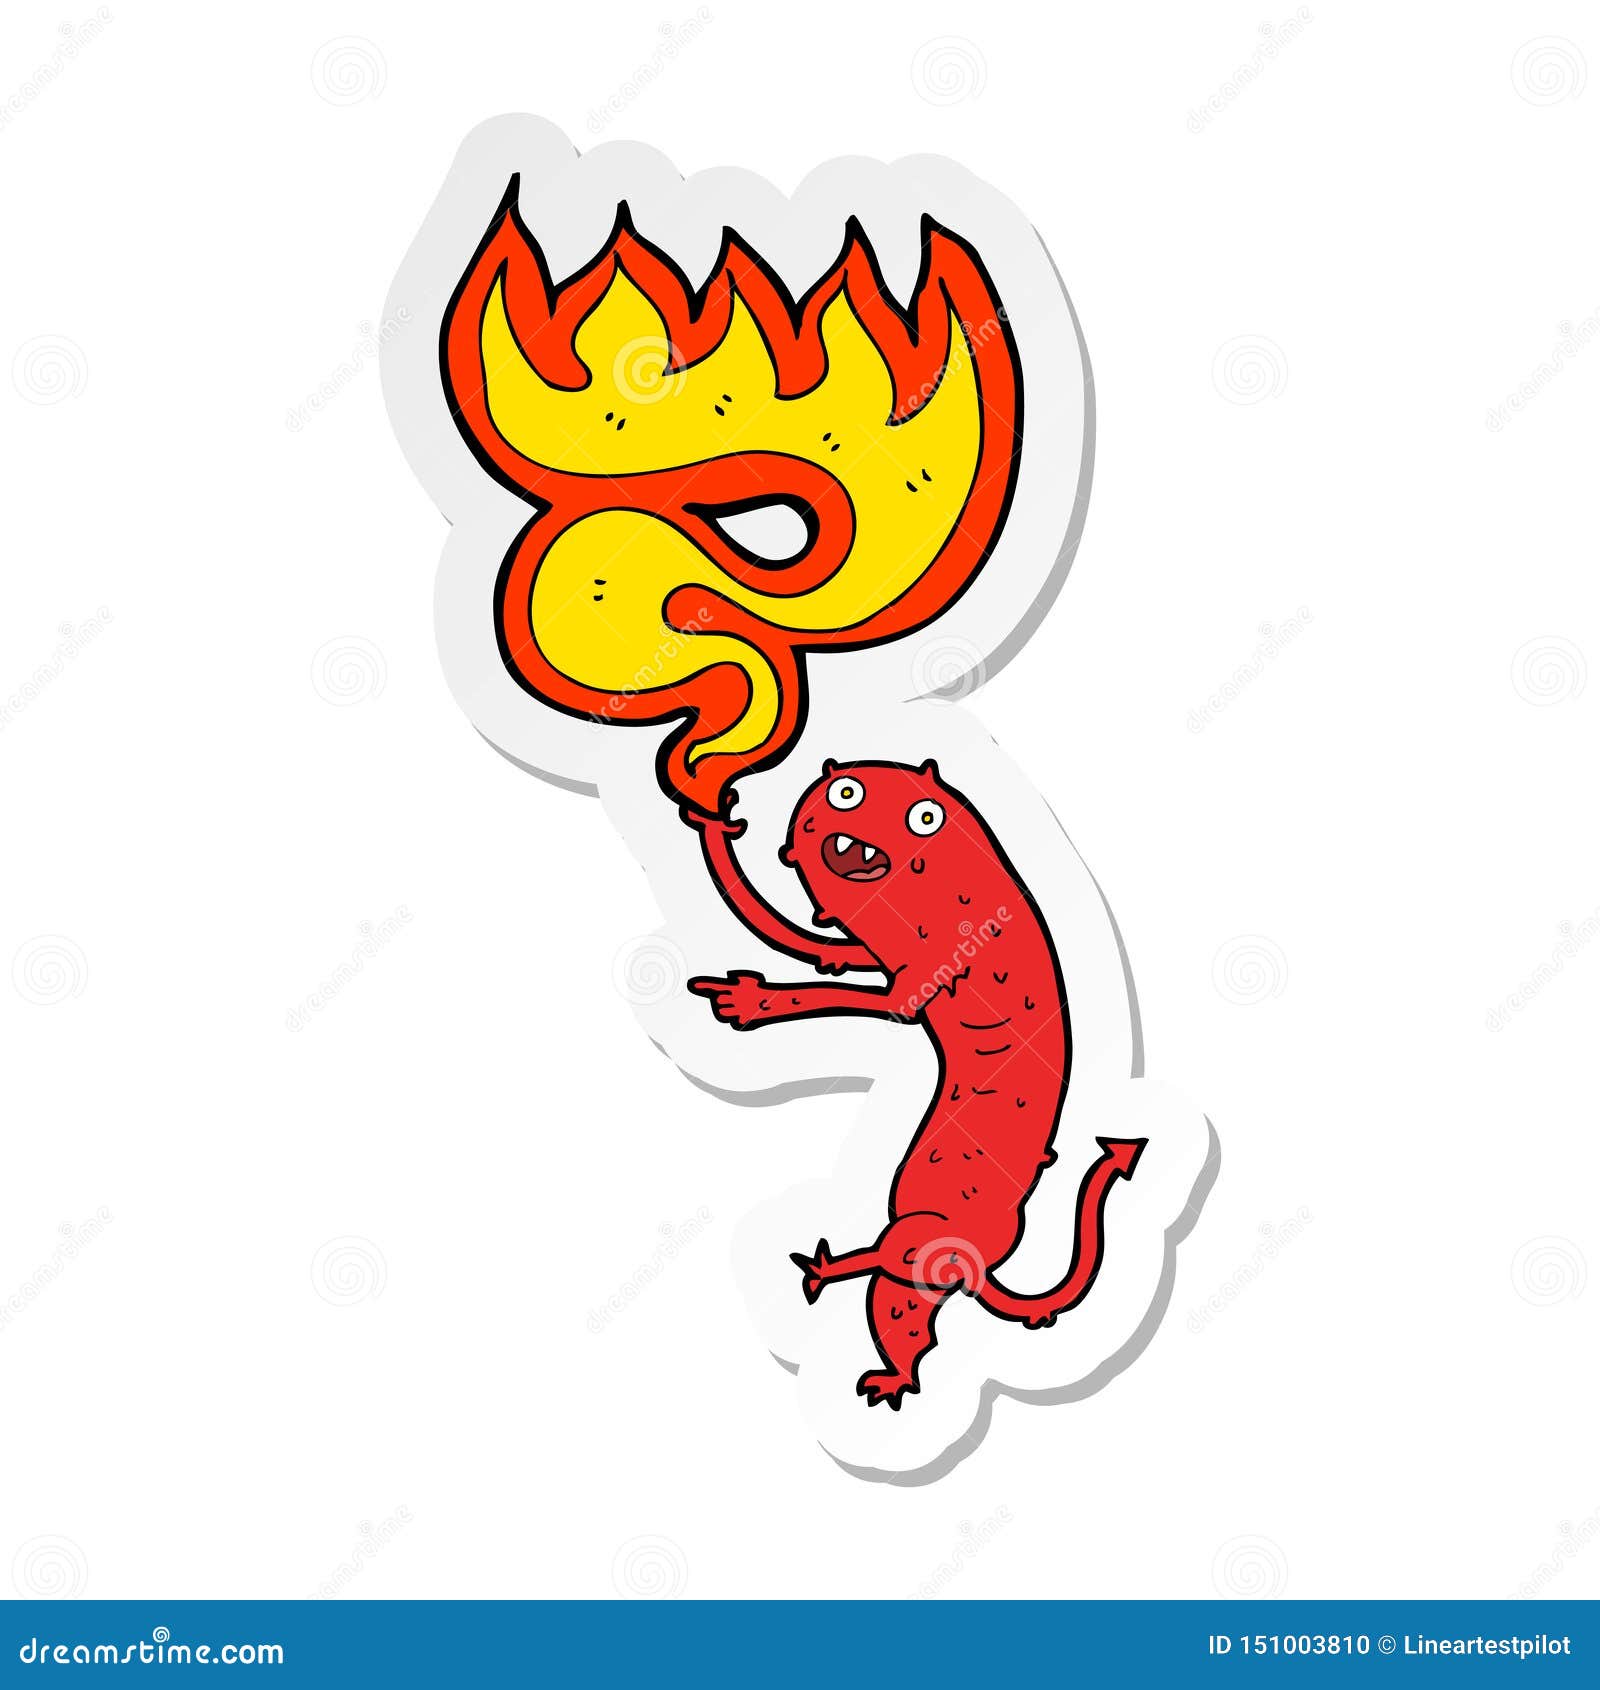 A Creative Sticker of a Cartoon Gross Little Monster Stock Vector ...